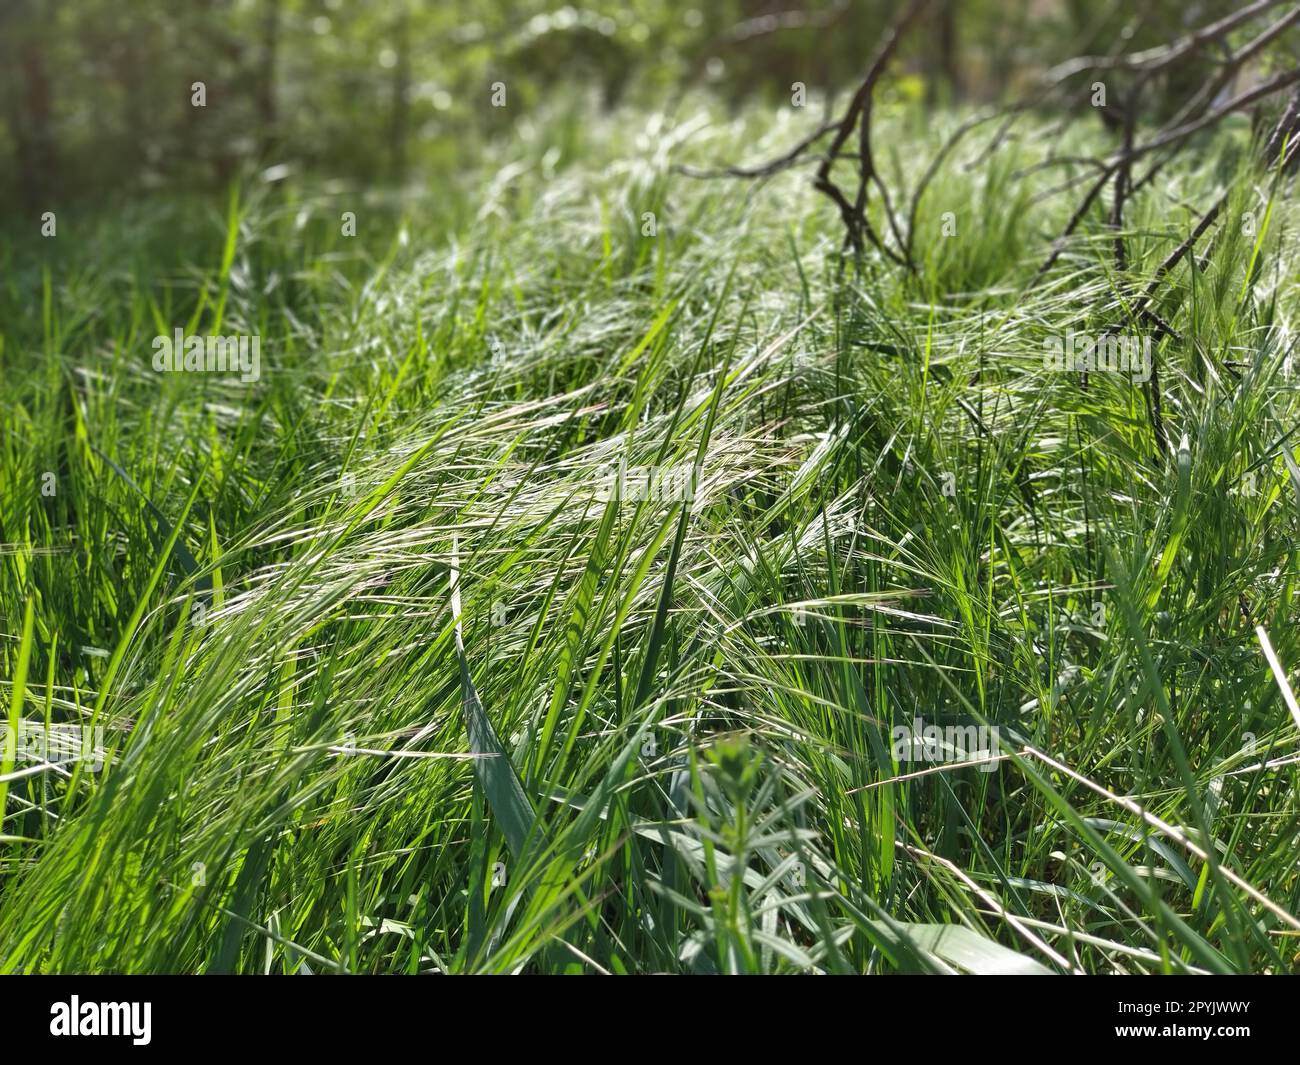 Hohes grünes Gras, das sich im Wind bückt. Schwarze, zerbrochene Zweige im Hintergrund. Sommerwald. Ökologie, Leben und Tod Stockfoto